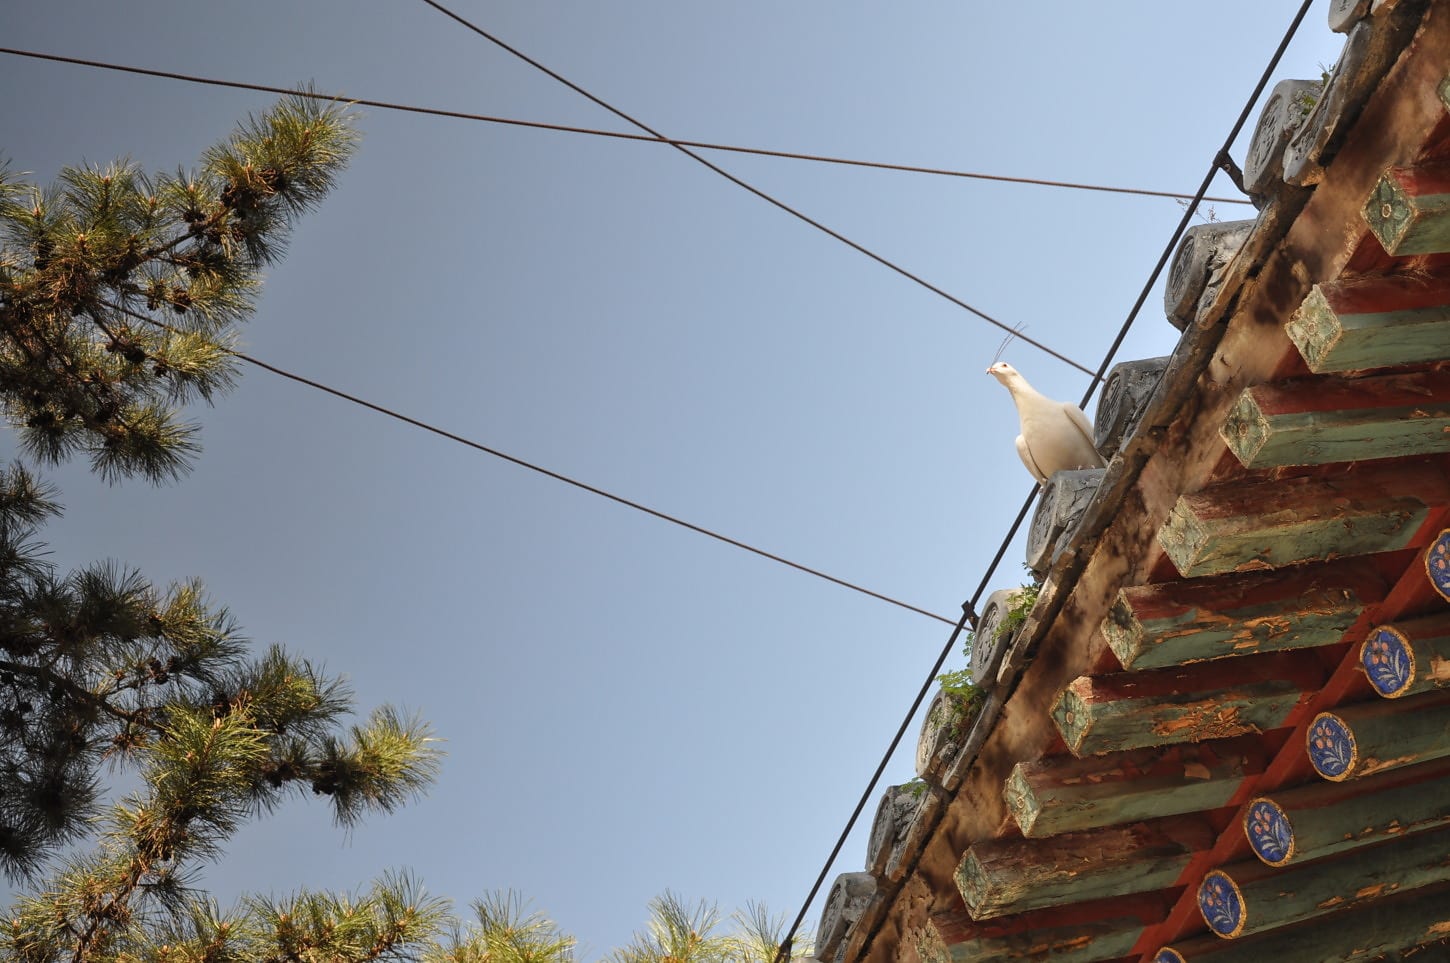 λευκό, πουλί, Περιστέρι, αρχιτεκτονικό ύφος, στον τελευταίο όροφο, Κίνα, στέγη, σύρμα